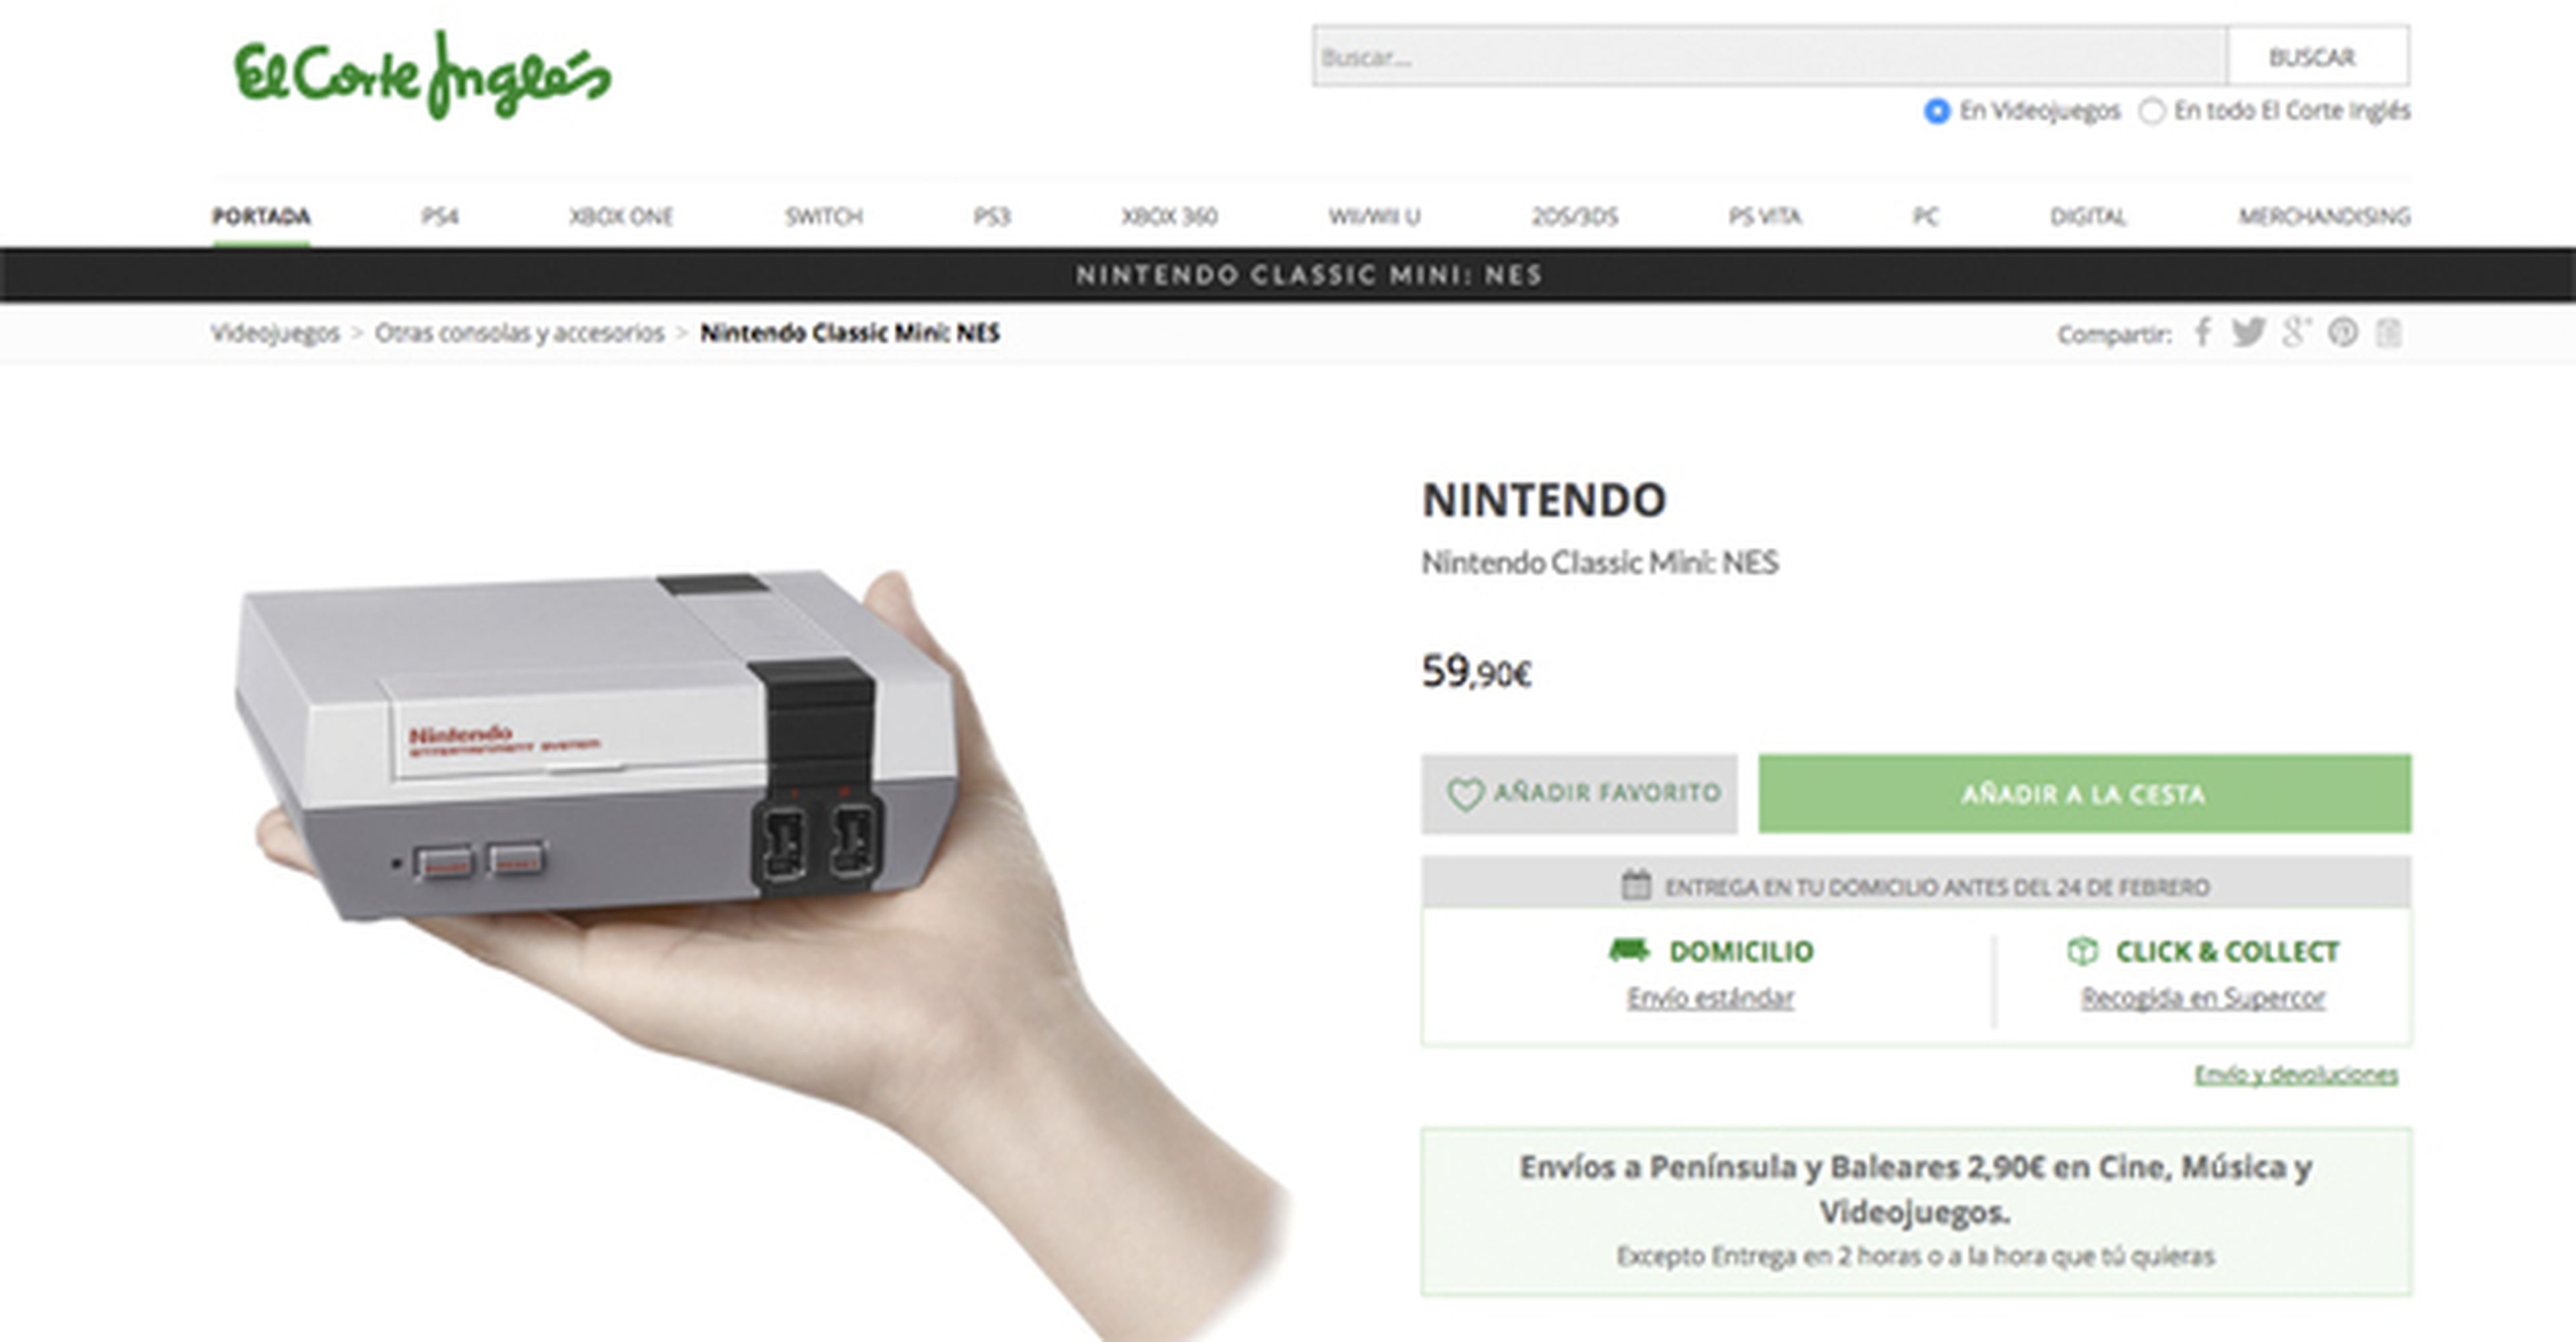 El Corte Inglés tiene stock de la consola Mini de Nintendo